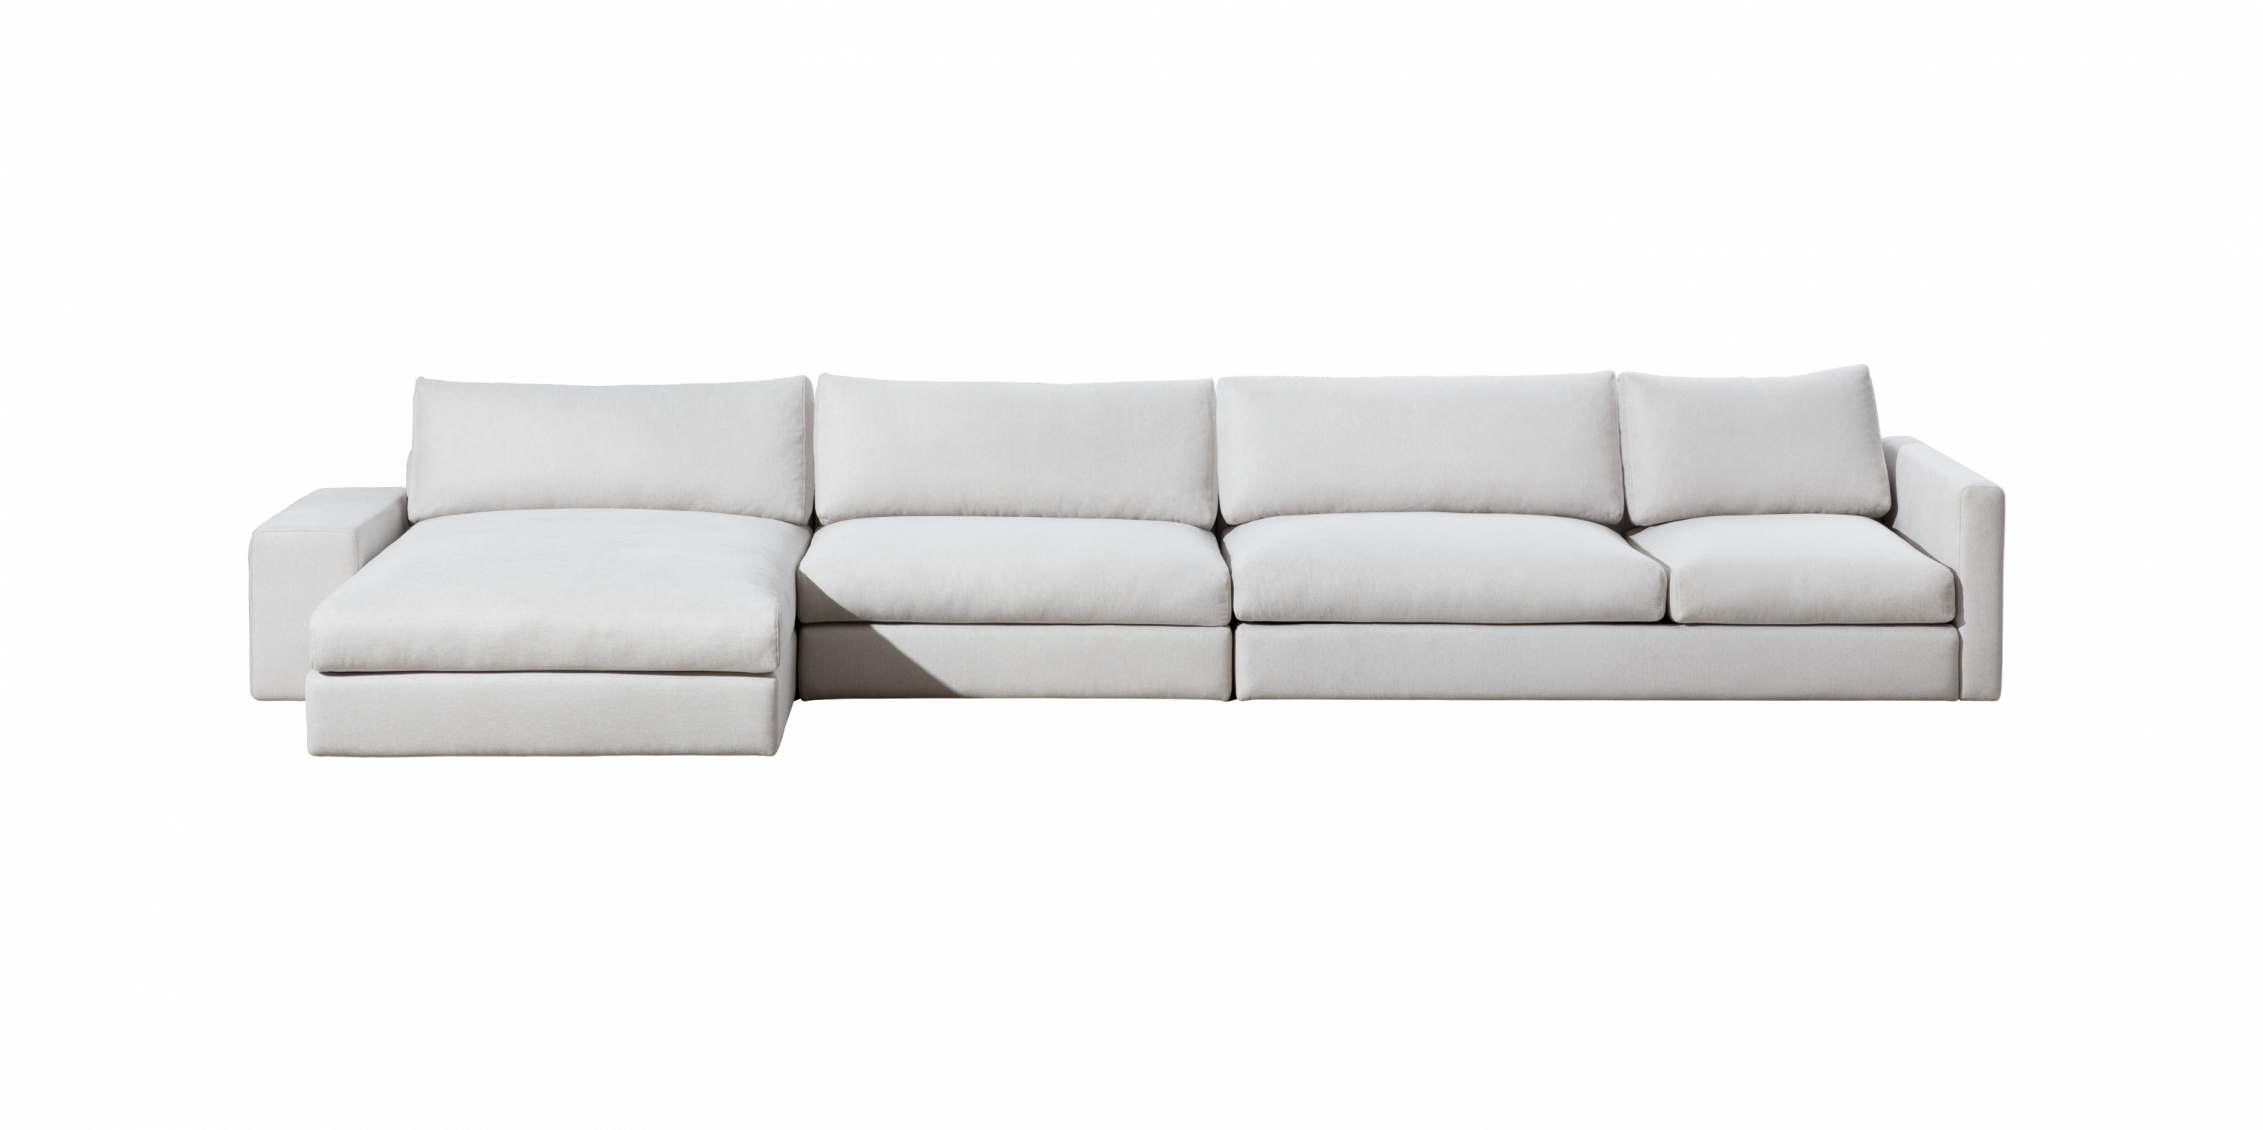 Sofa Classic MCF401L